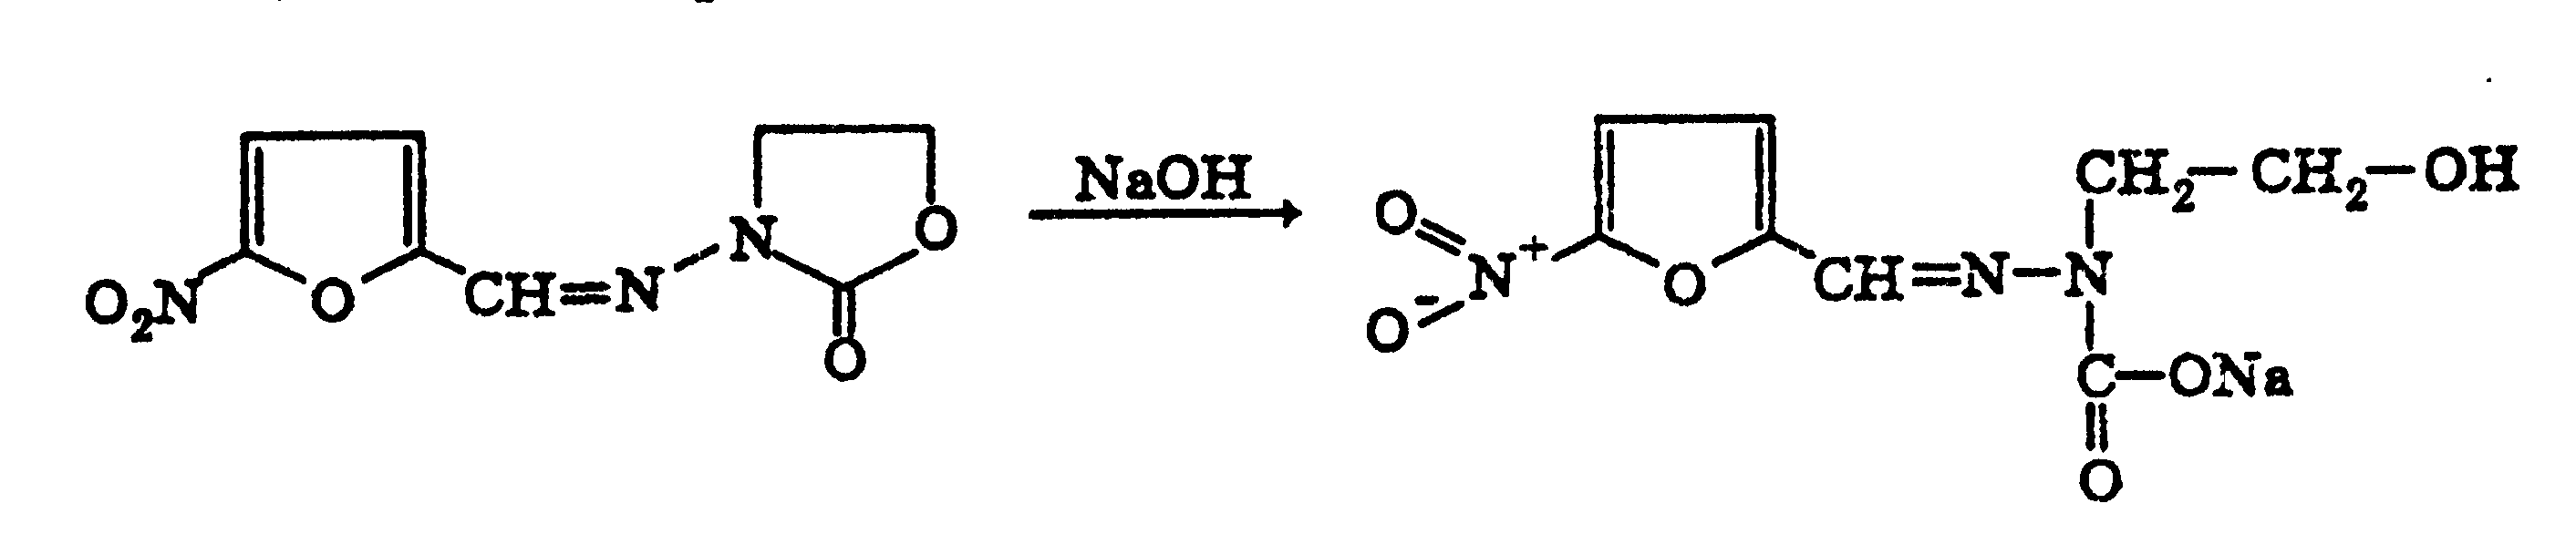 Naoh водный реакции. Фурадонин с натрия гидроксидом реакция. Фурадонин реакции подлинности. Реакция Фурадонина с гидроксидом натрия. Фуразолидон с натрия гидроксидом реакция.